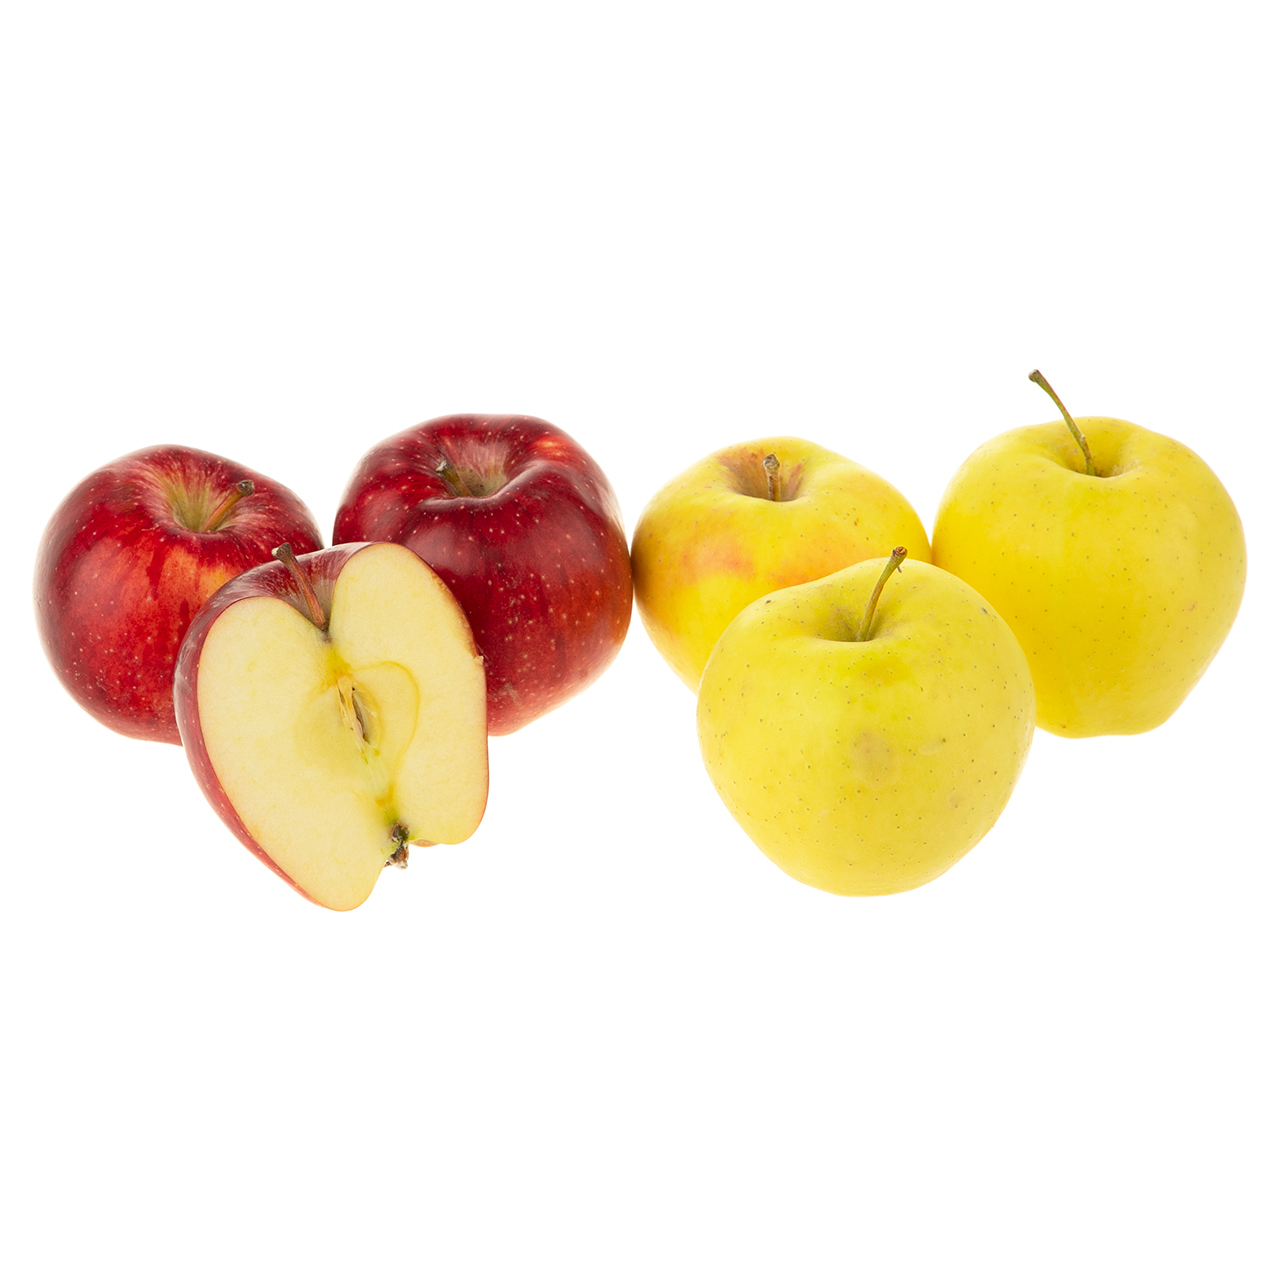 دو سیب درجه یک - 0.9 کیلوگرم (6 عدد)